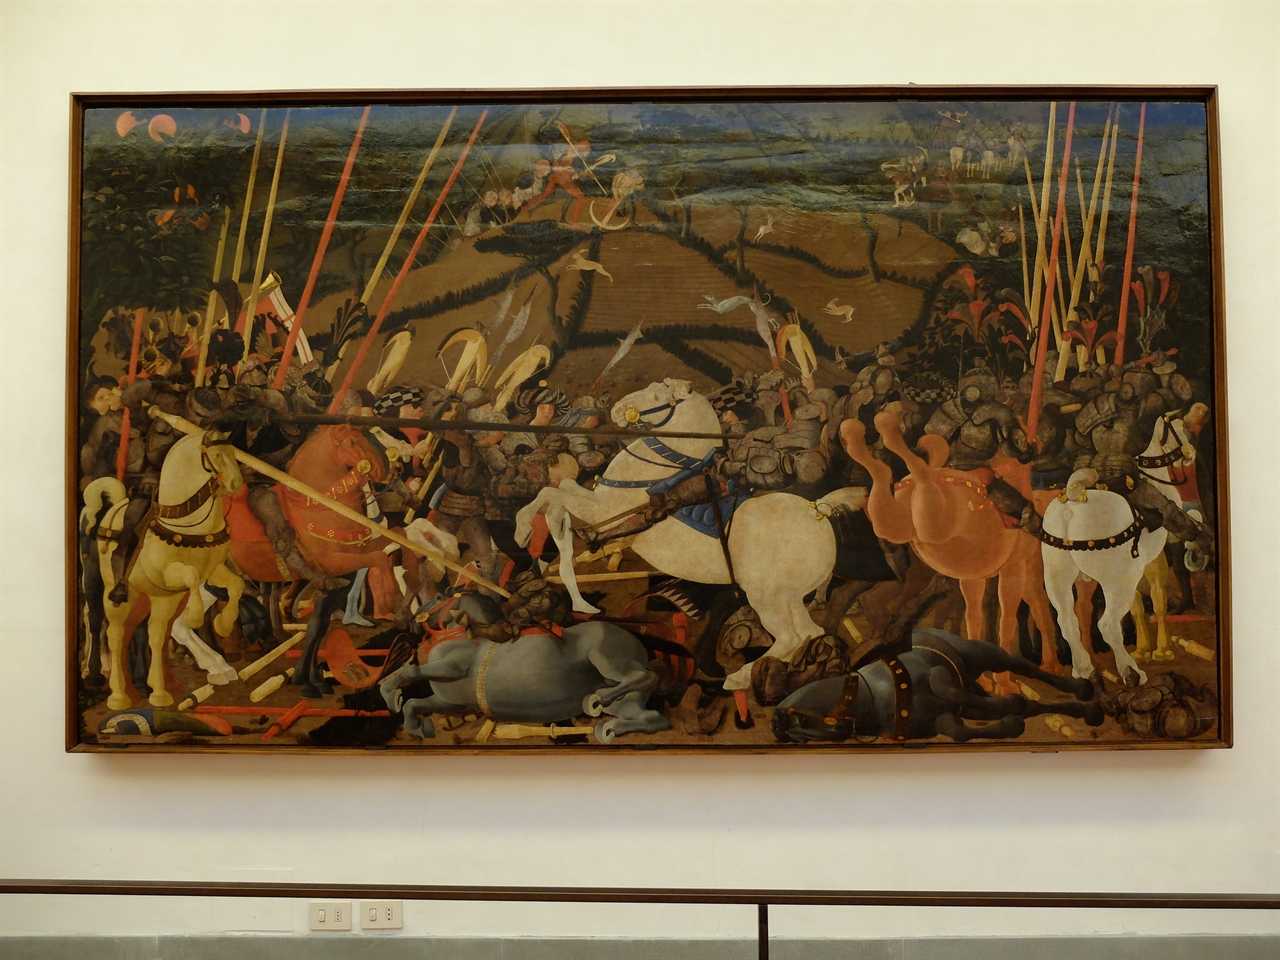 파울로 우첼로, '산 로마노의 전투' 중 '베르나르디노 디 치아르다가 창에 찔리다', 피렌체 우피치미술관. 피렌체와 시에나 사이의 전투를 묘사한 이 그림은 원근법의 대가 우첼로의 특징이 잘 드러나는 작품입니다.